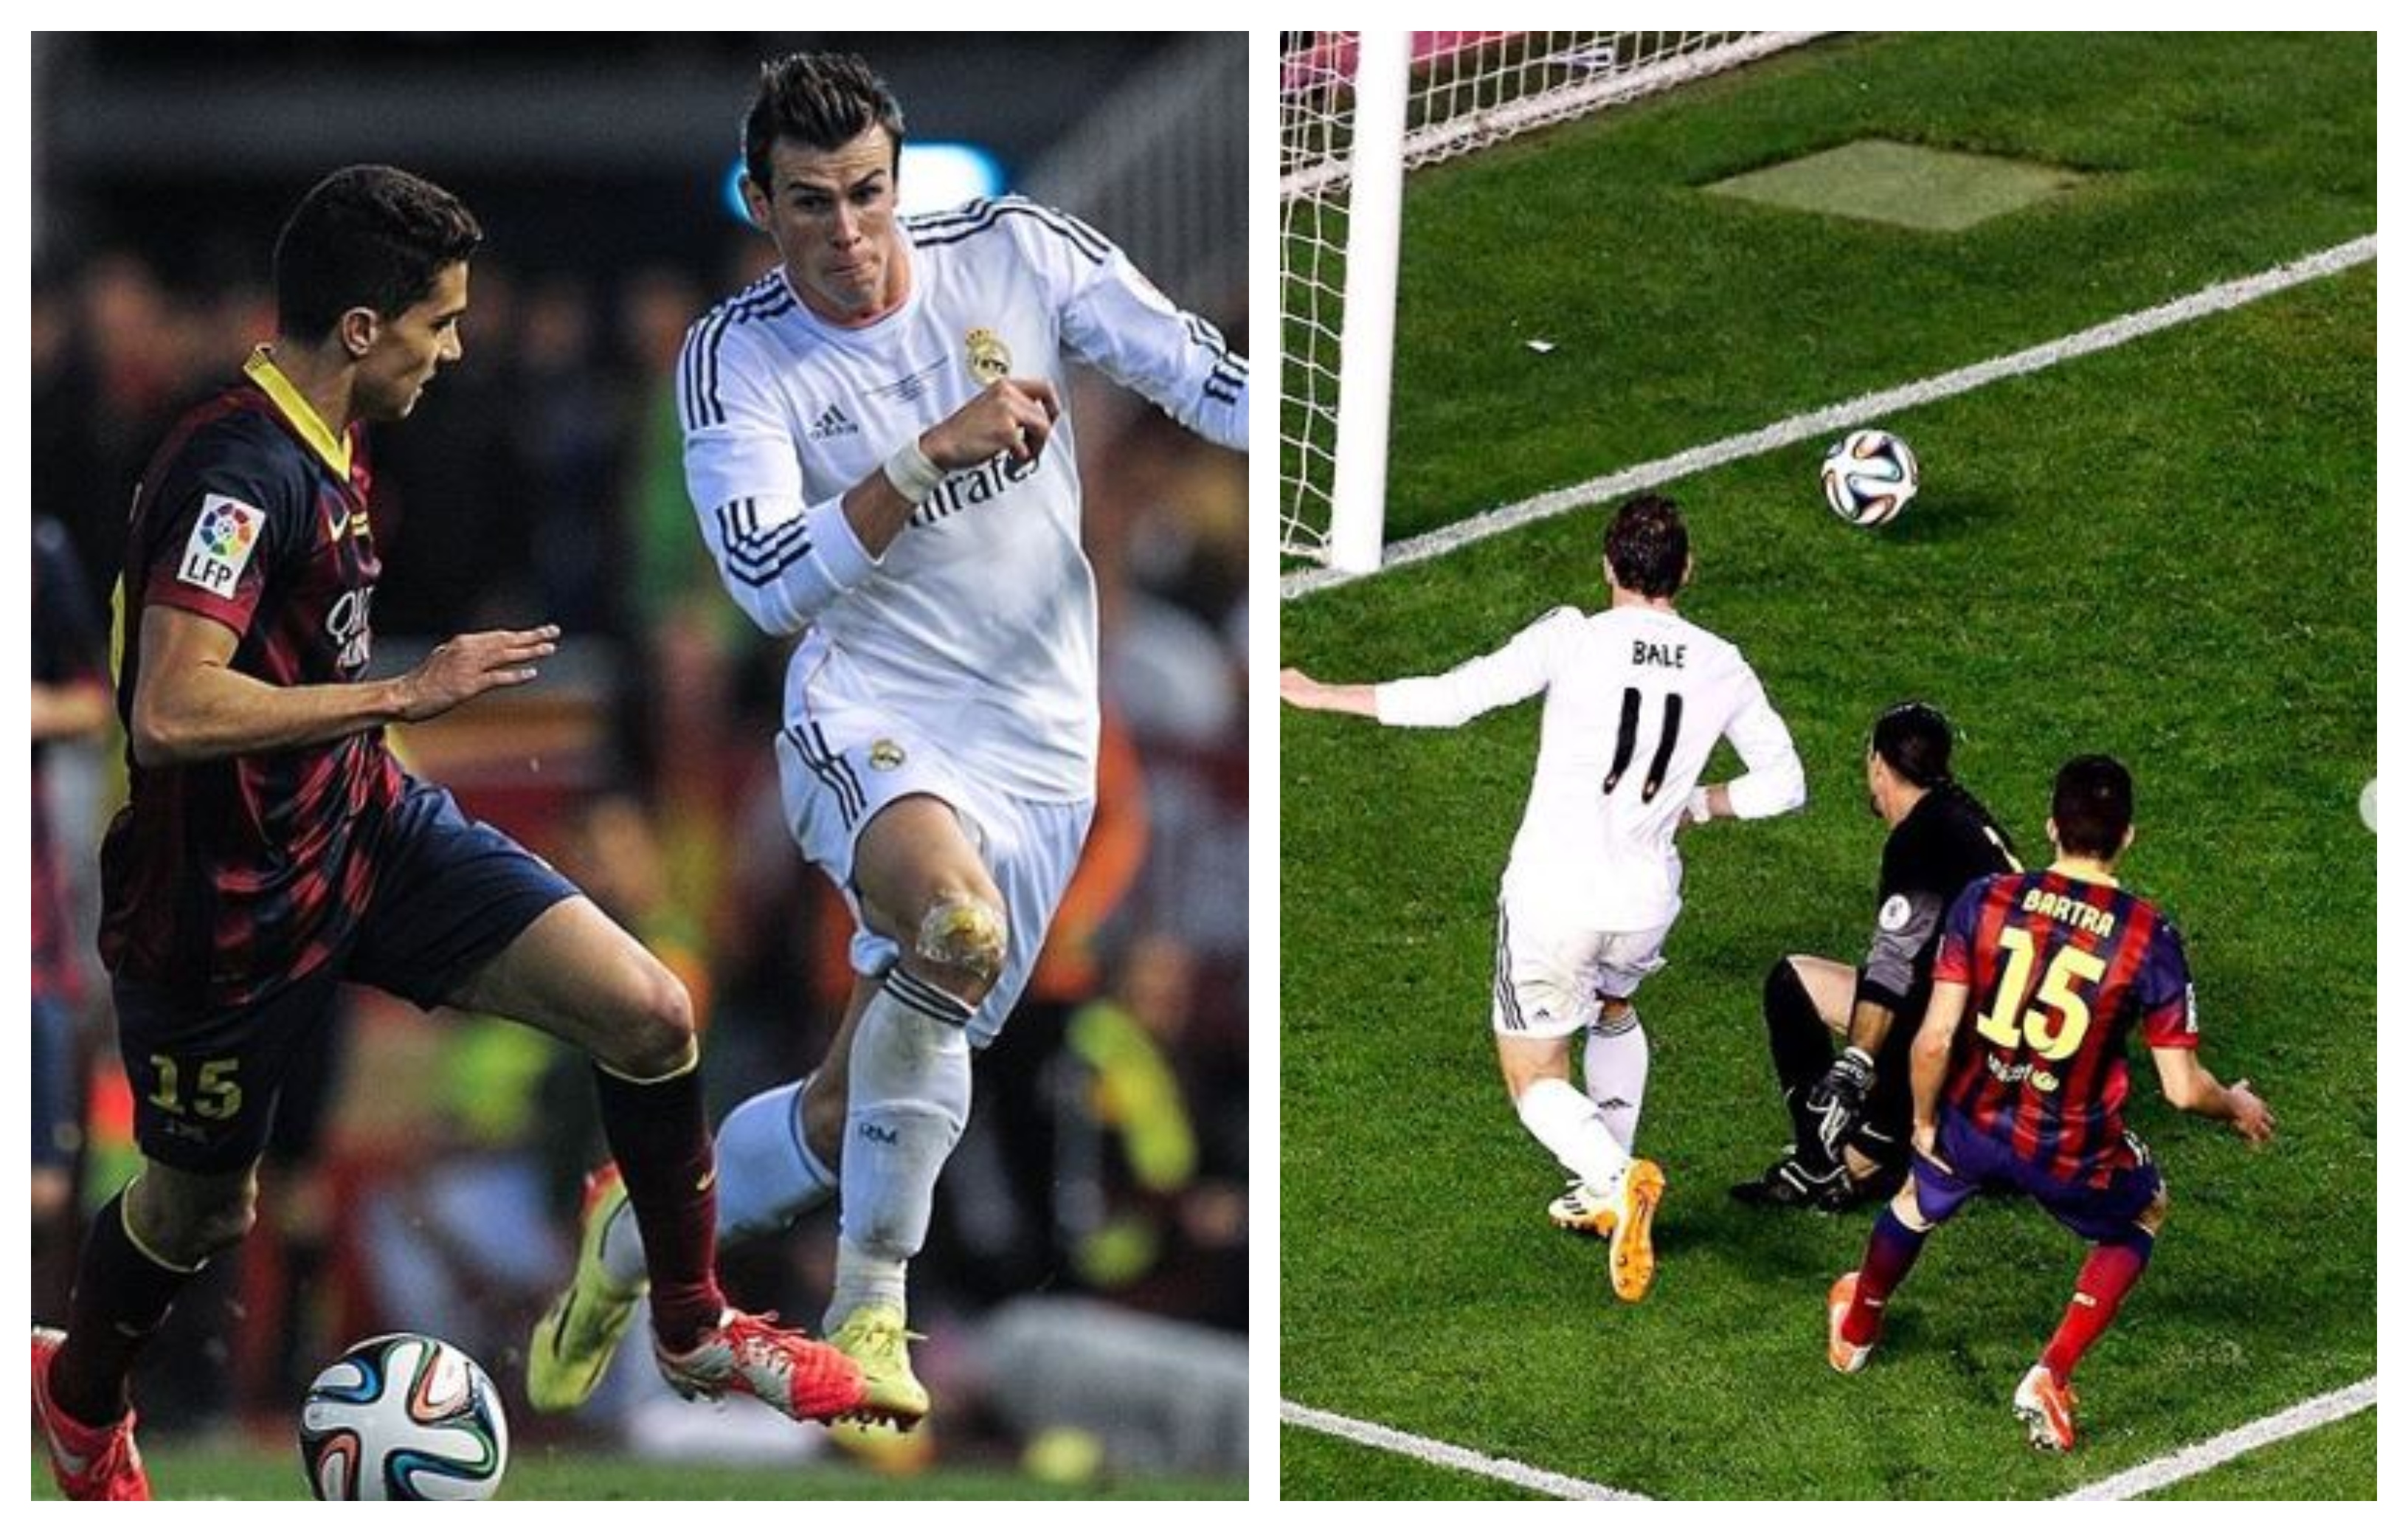 Esta es una de las jugadas históricas de Gareth Bale en el Real Madrid. (Foto Prensa Libre: Instagram)